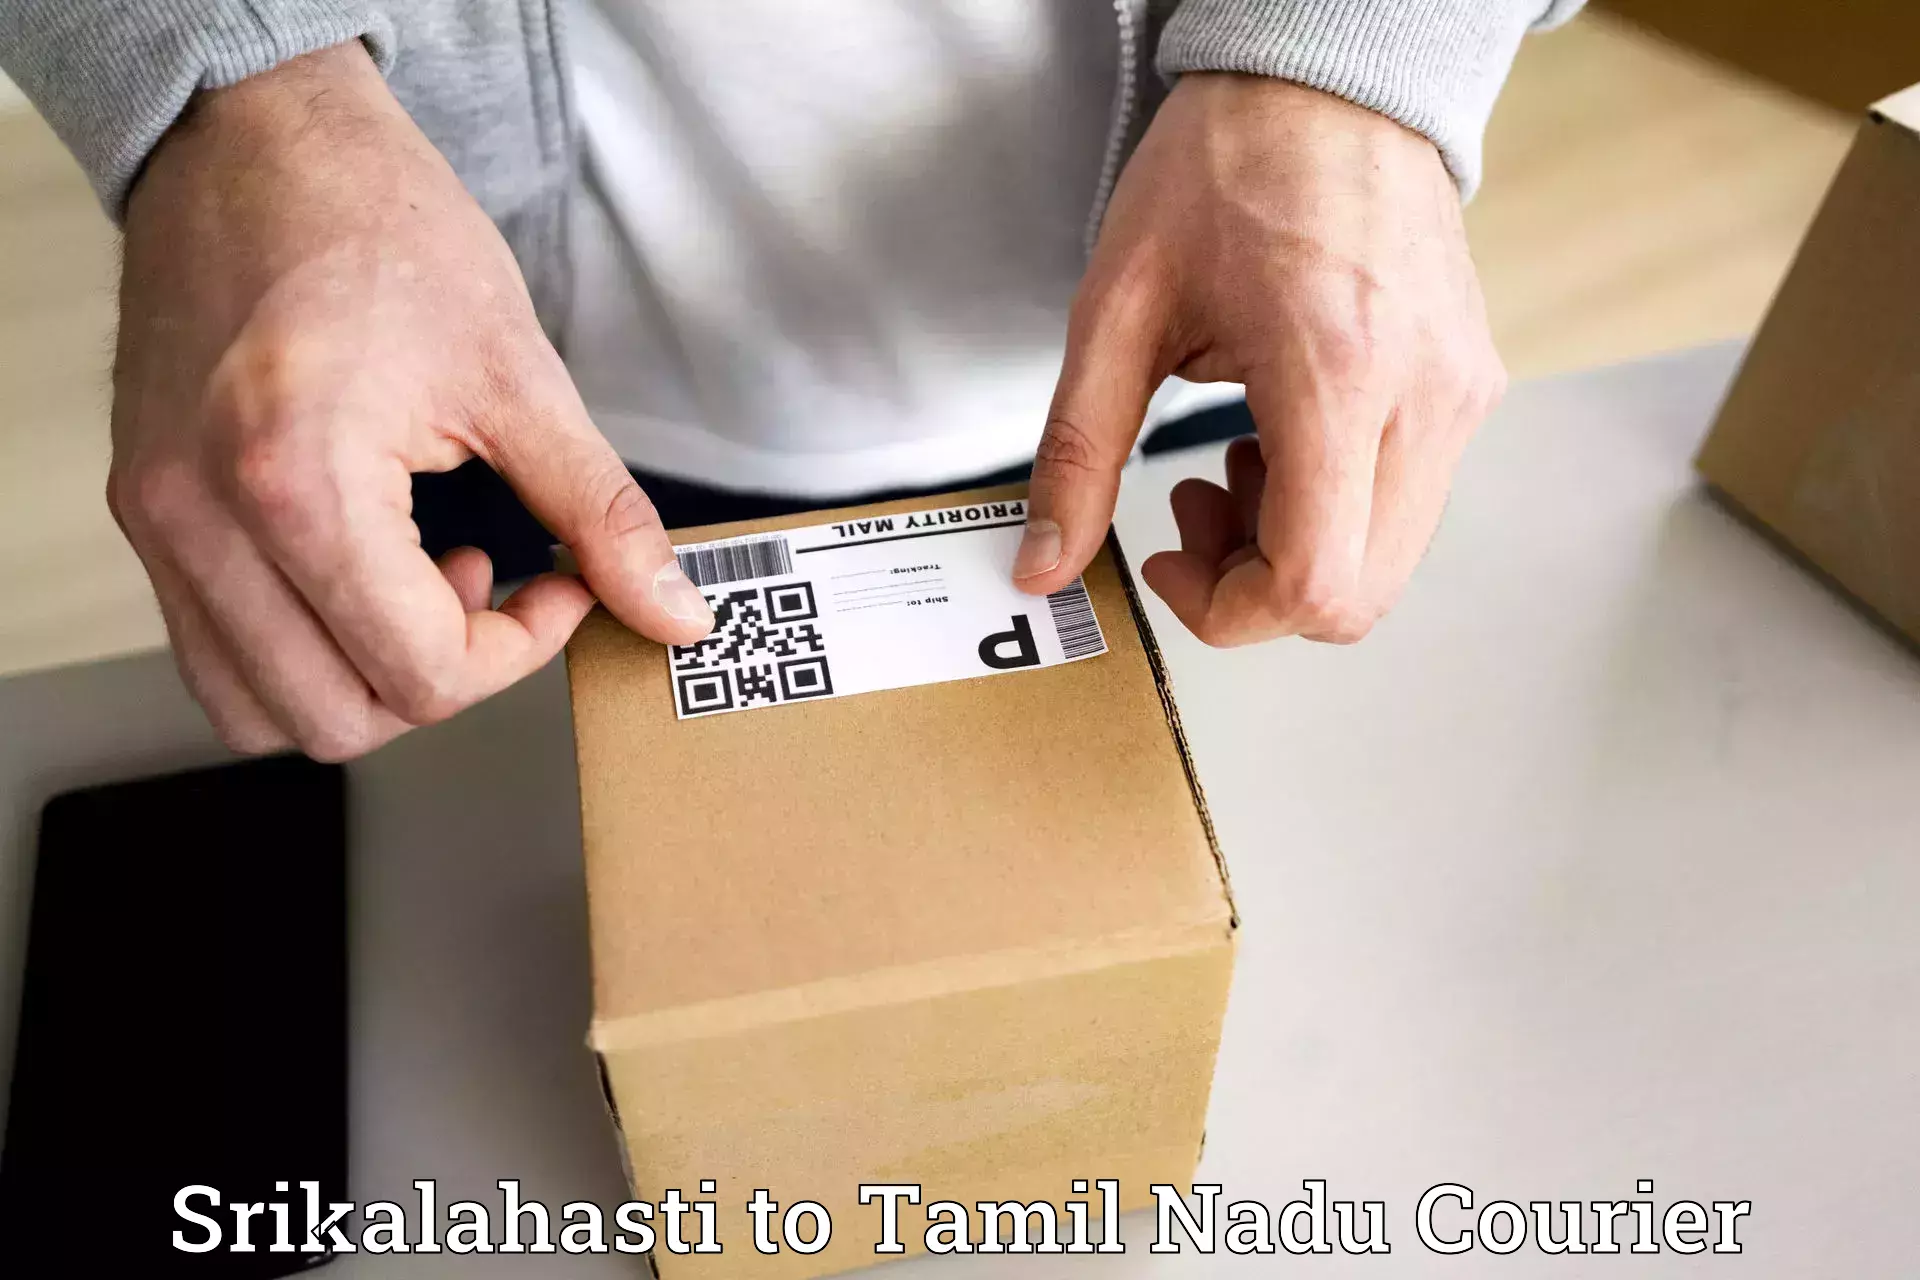 Fast shipping solutions Srikalahasti to Tamil Nadu